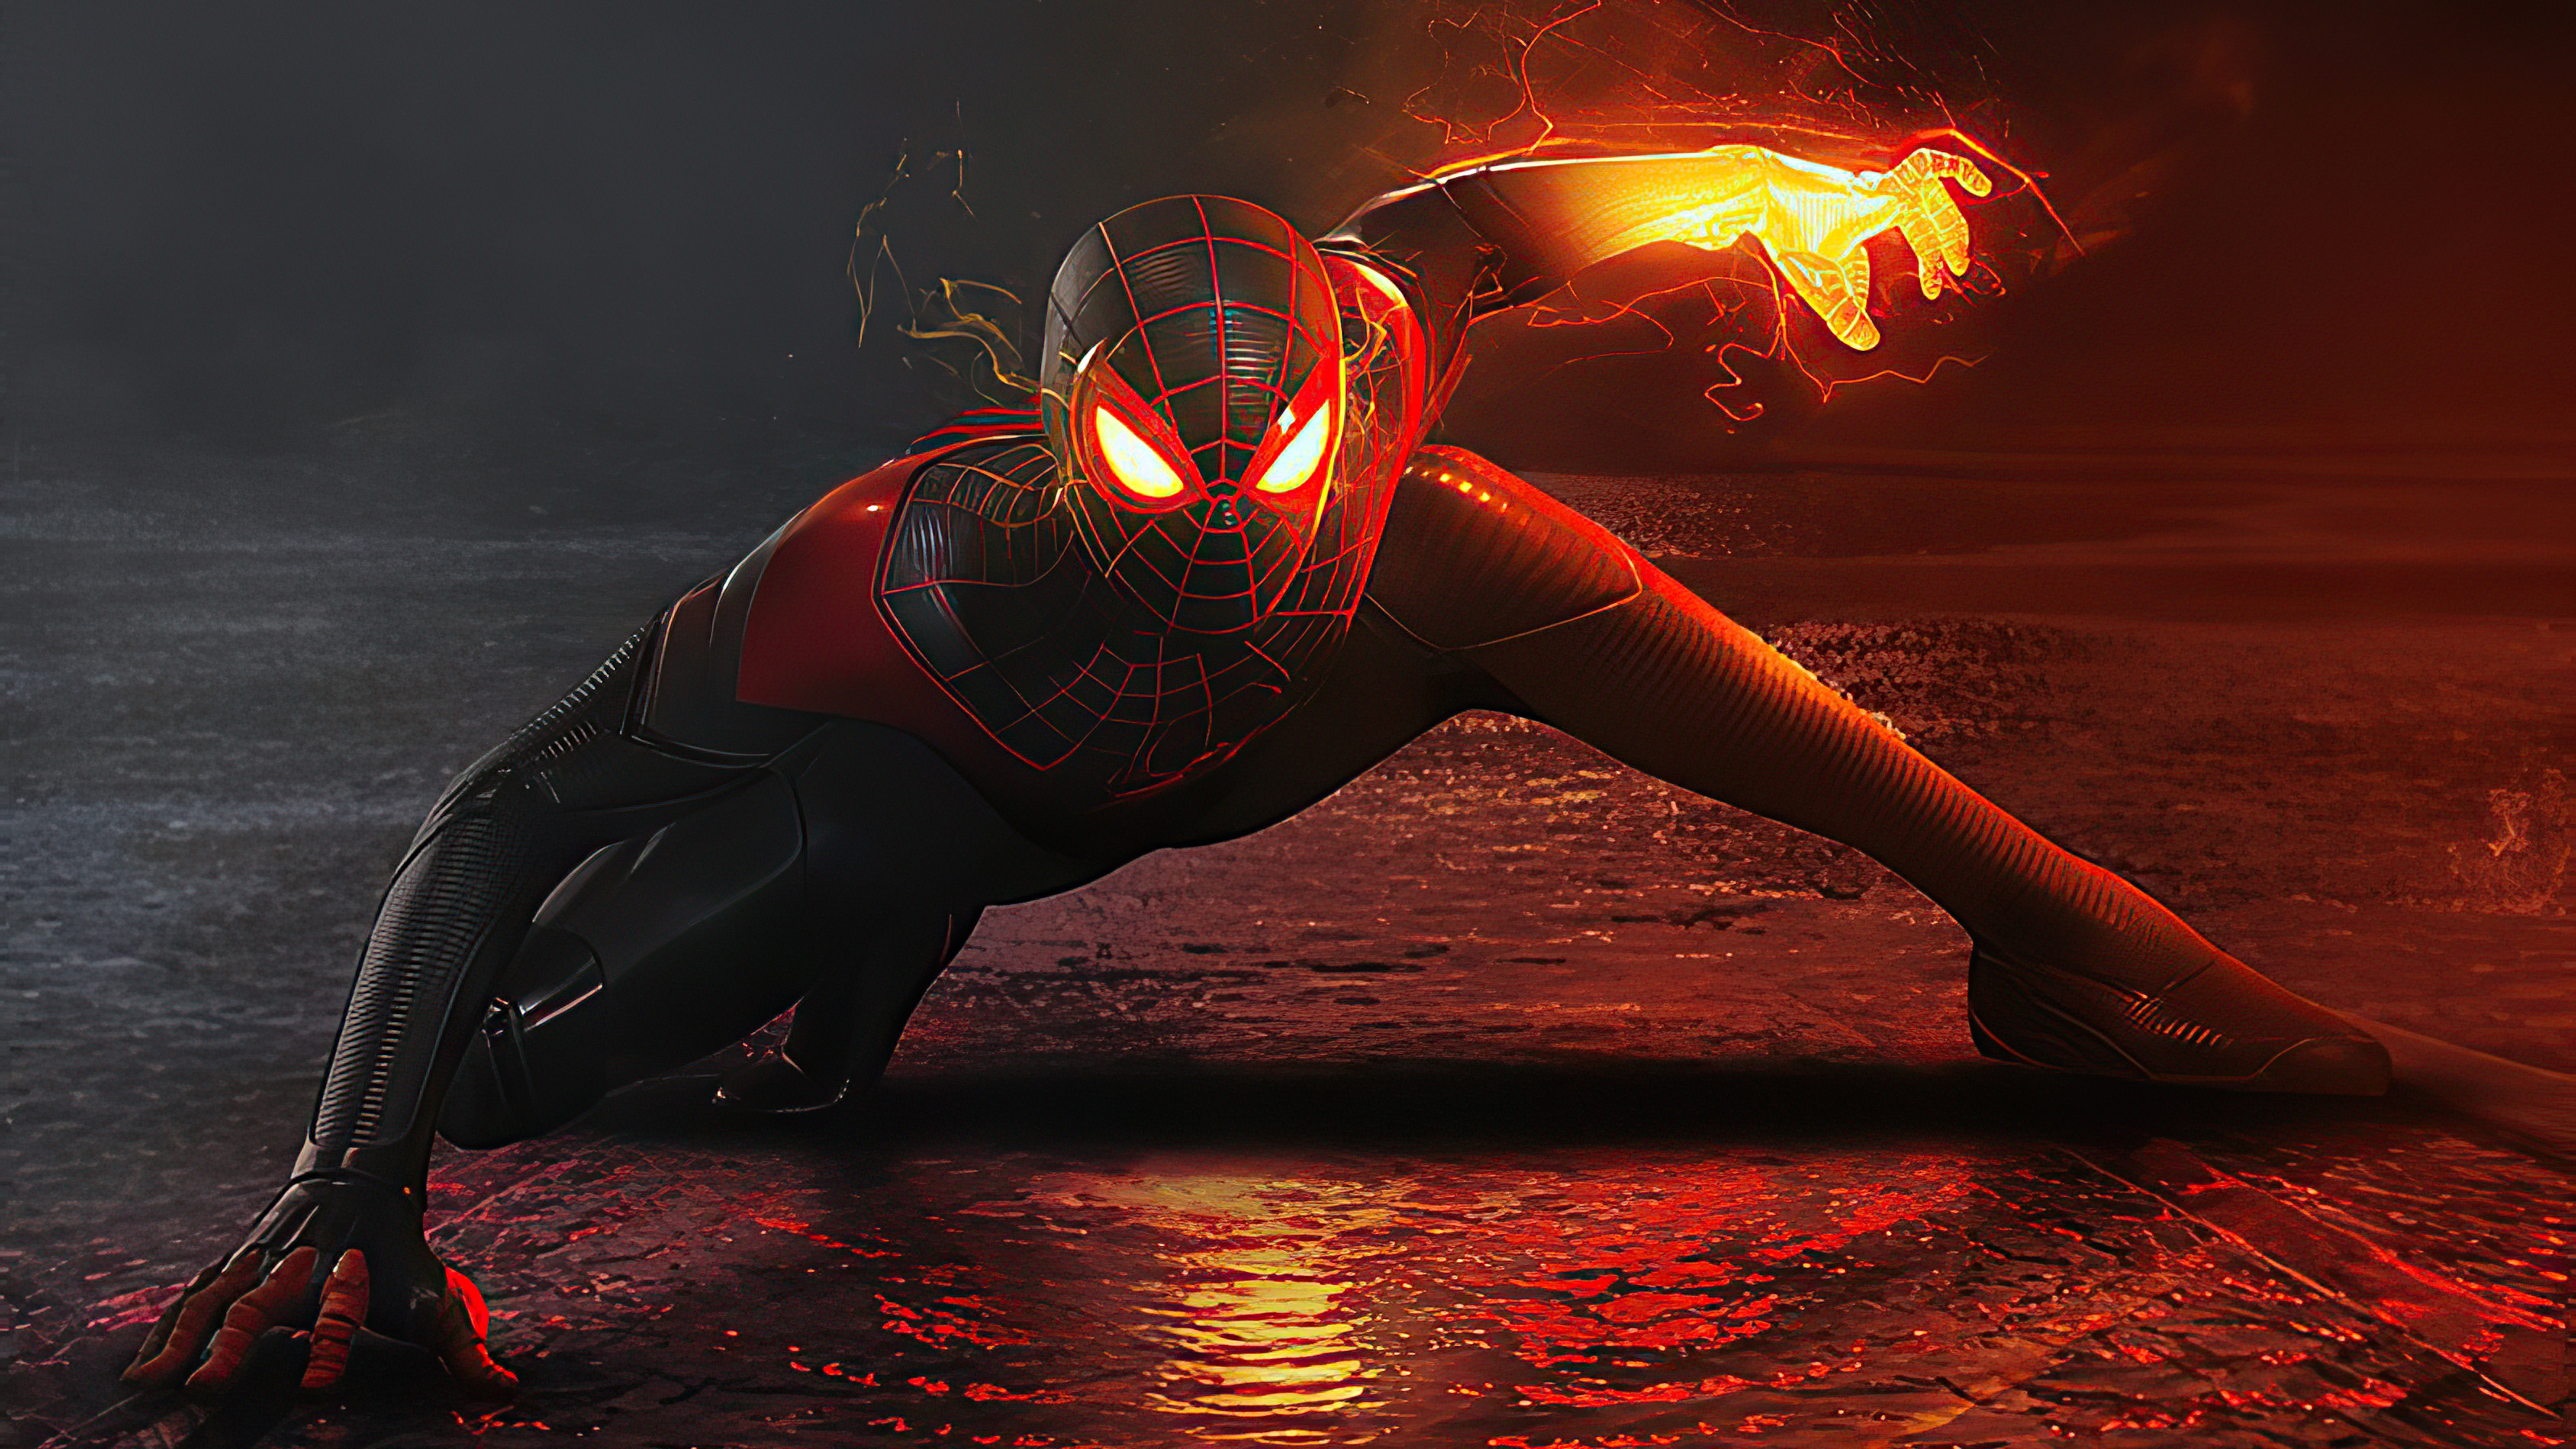 2020 Black Spiderman 4k Artwork, HD Superheroes, 4k Wallpapers, Images